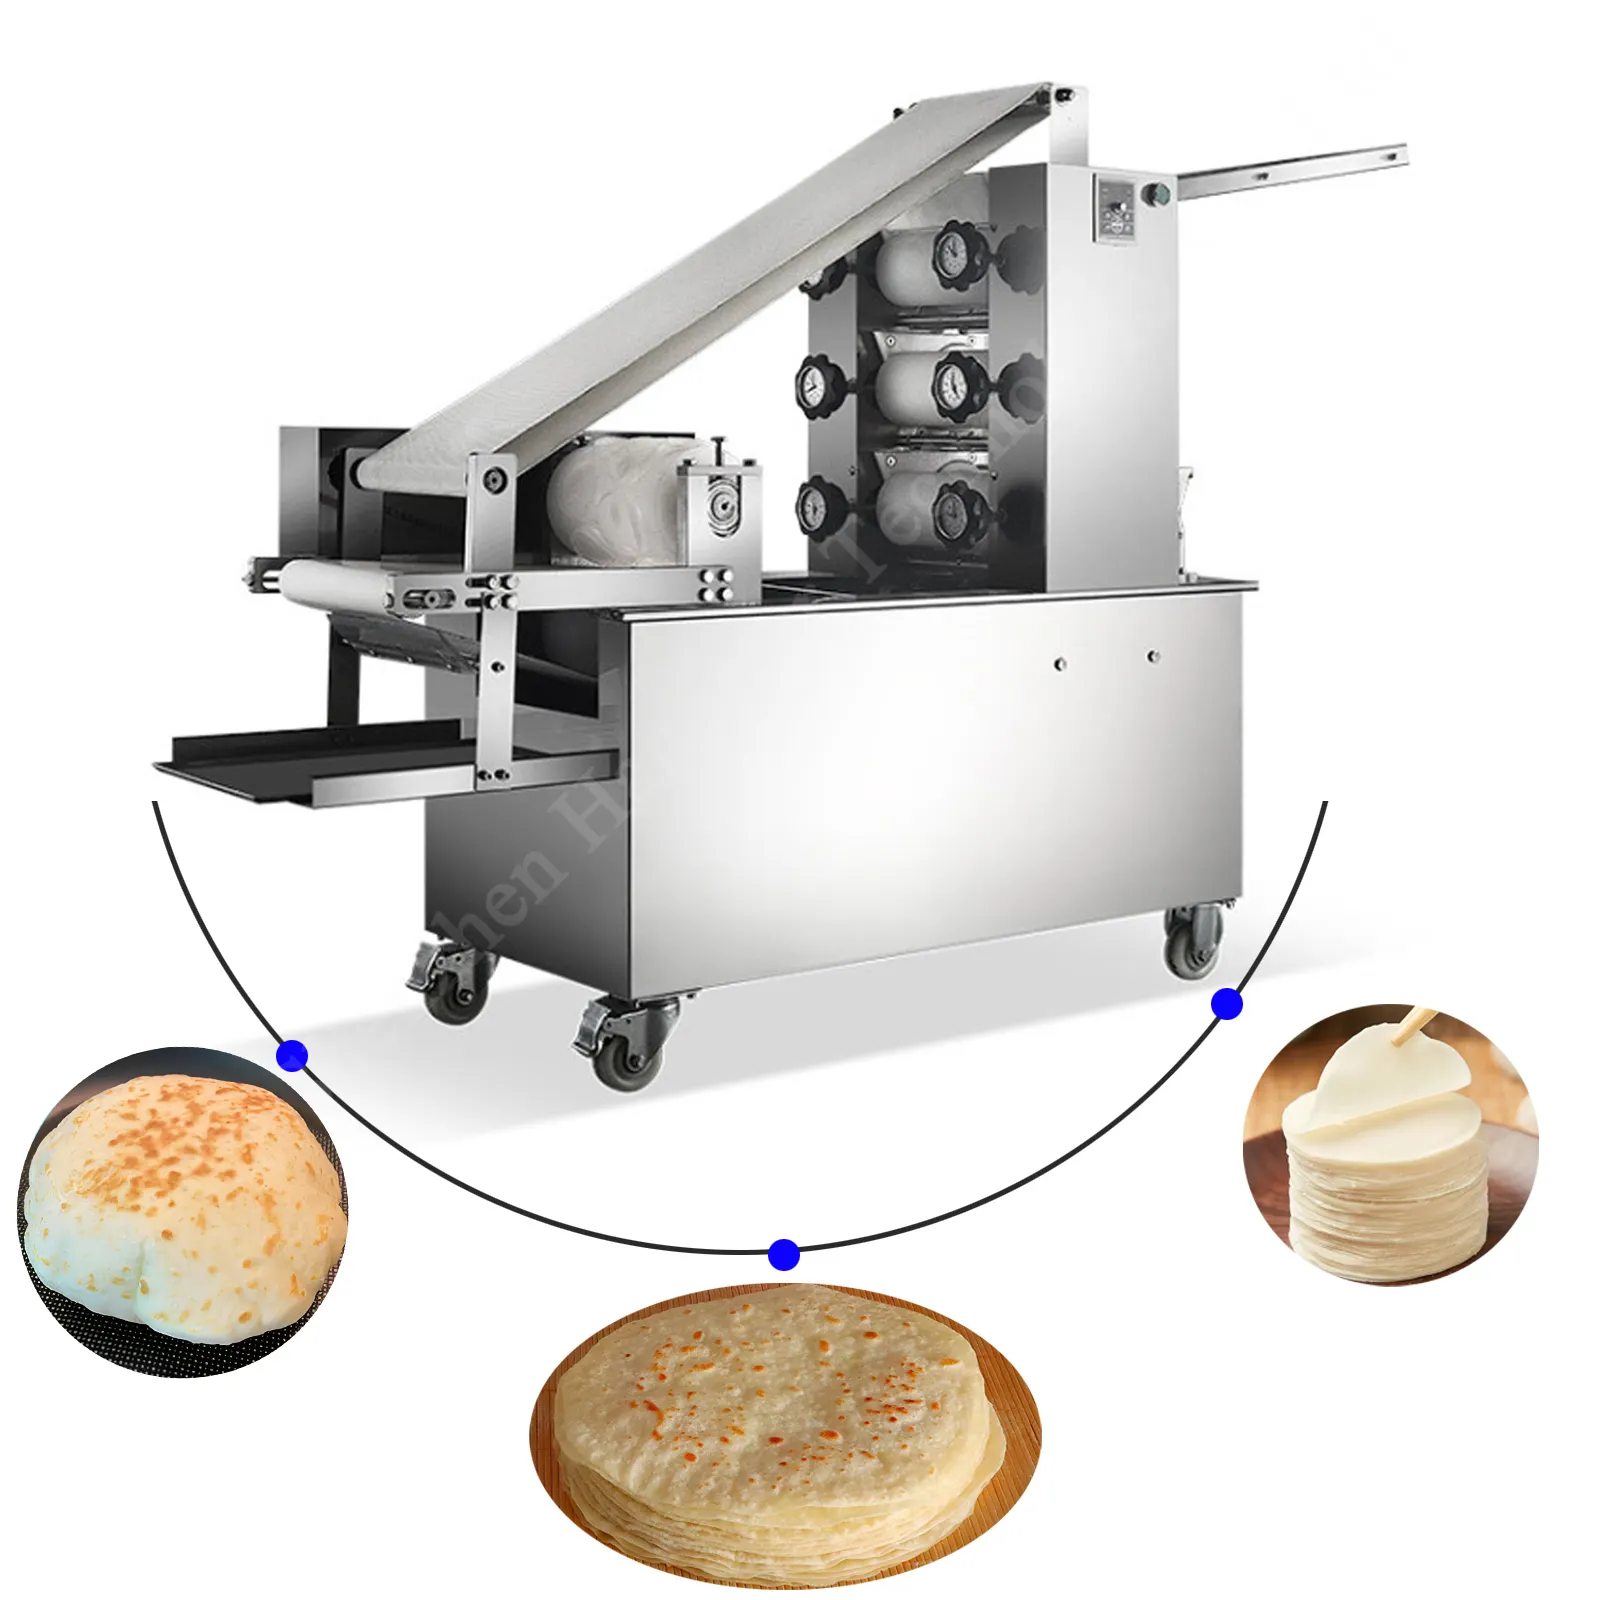 ماكينة صنع خبز الروتي الأوتوماتيكية الصغيرة، ماكينة صنع الشباتي الأوتوماتيكية من النمسا، ماكينة صنع خبز الروتي الأوتوماتيكية